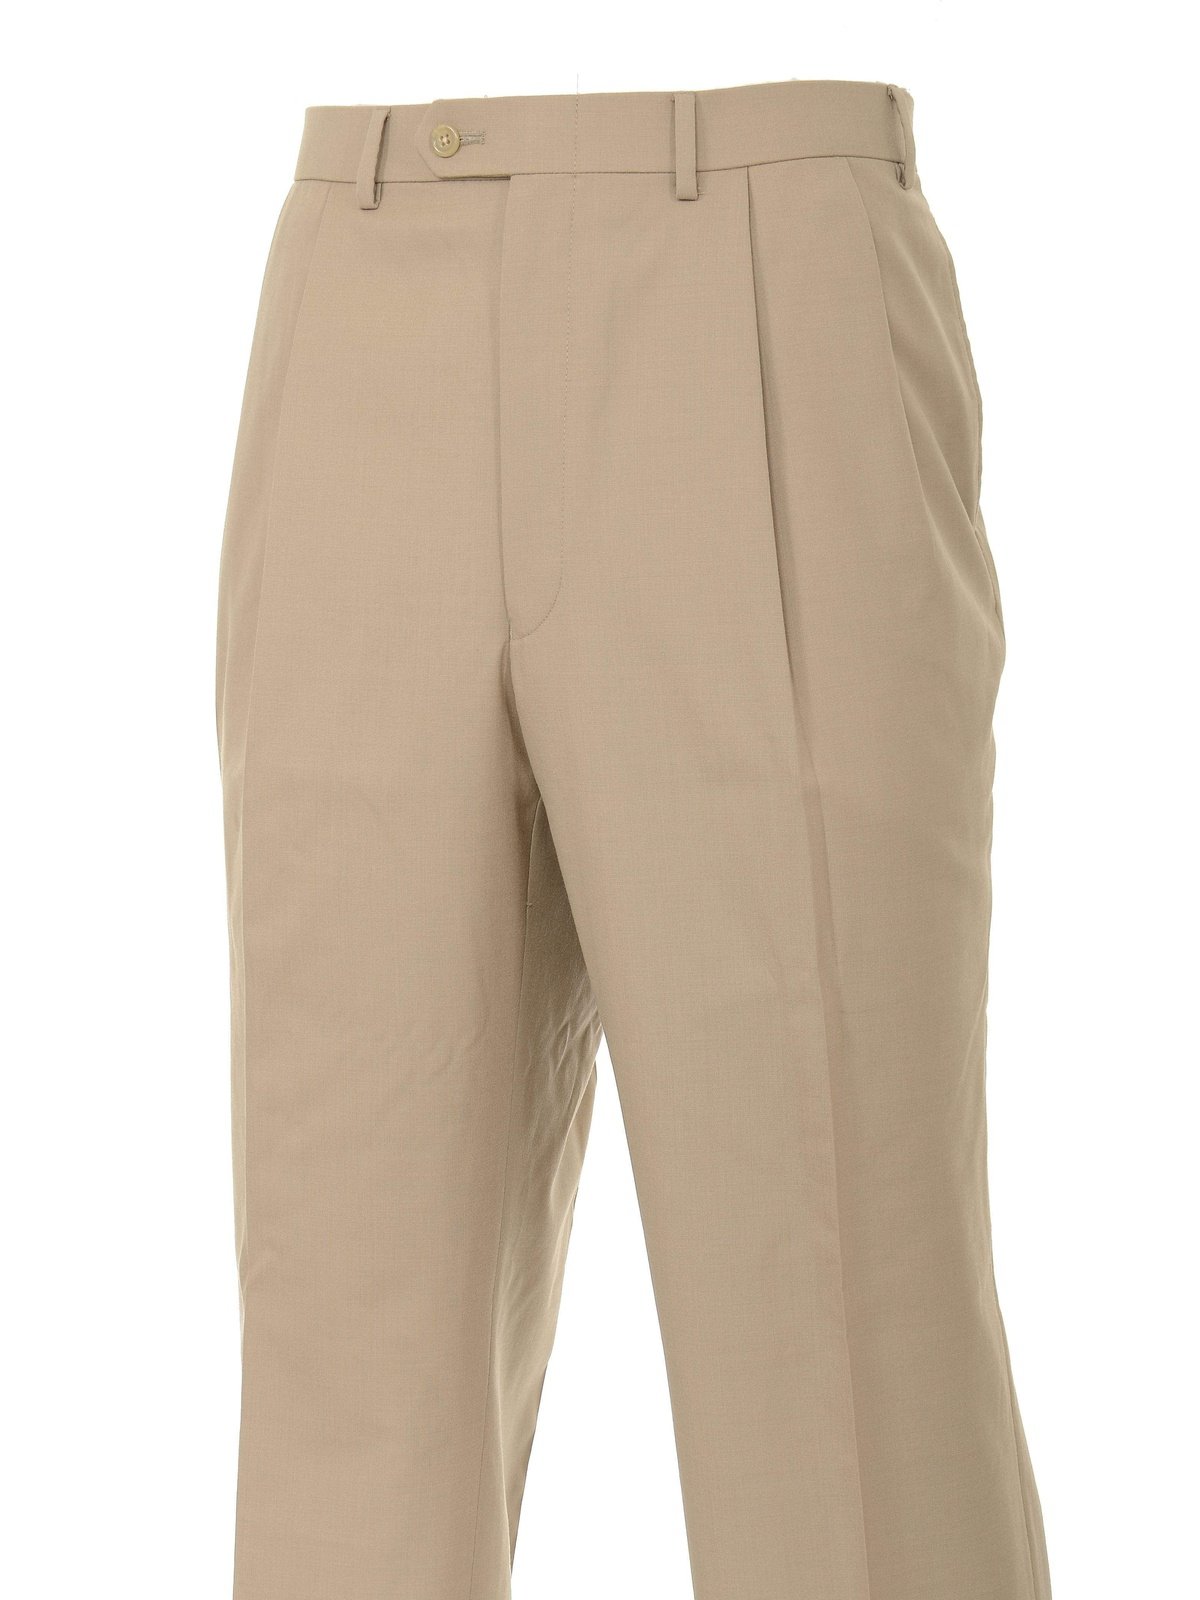 Ralph Lauren PANTS Ralph Lauren Classic Fit Solid Taupe Tan Pleated Washable Dress Pants